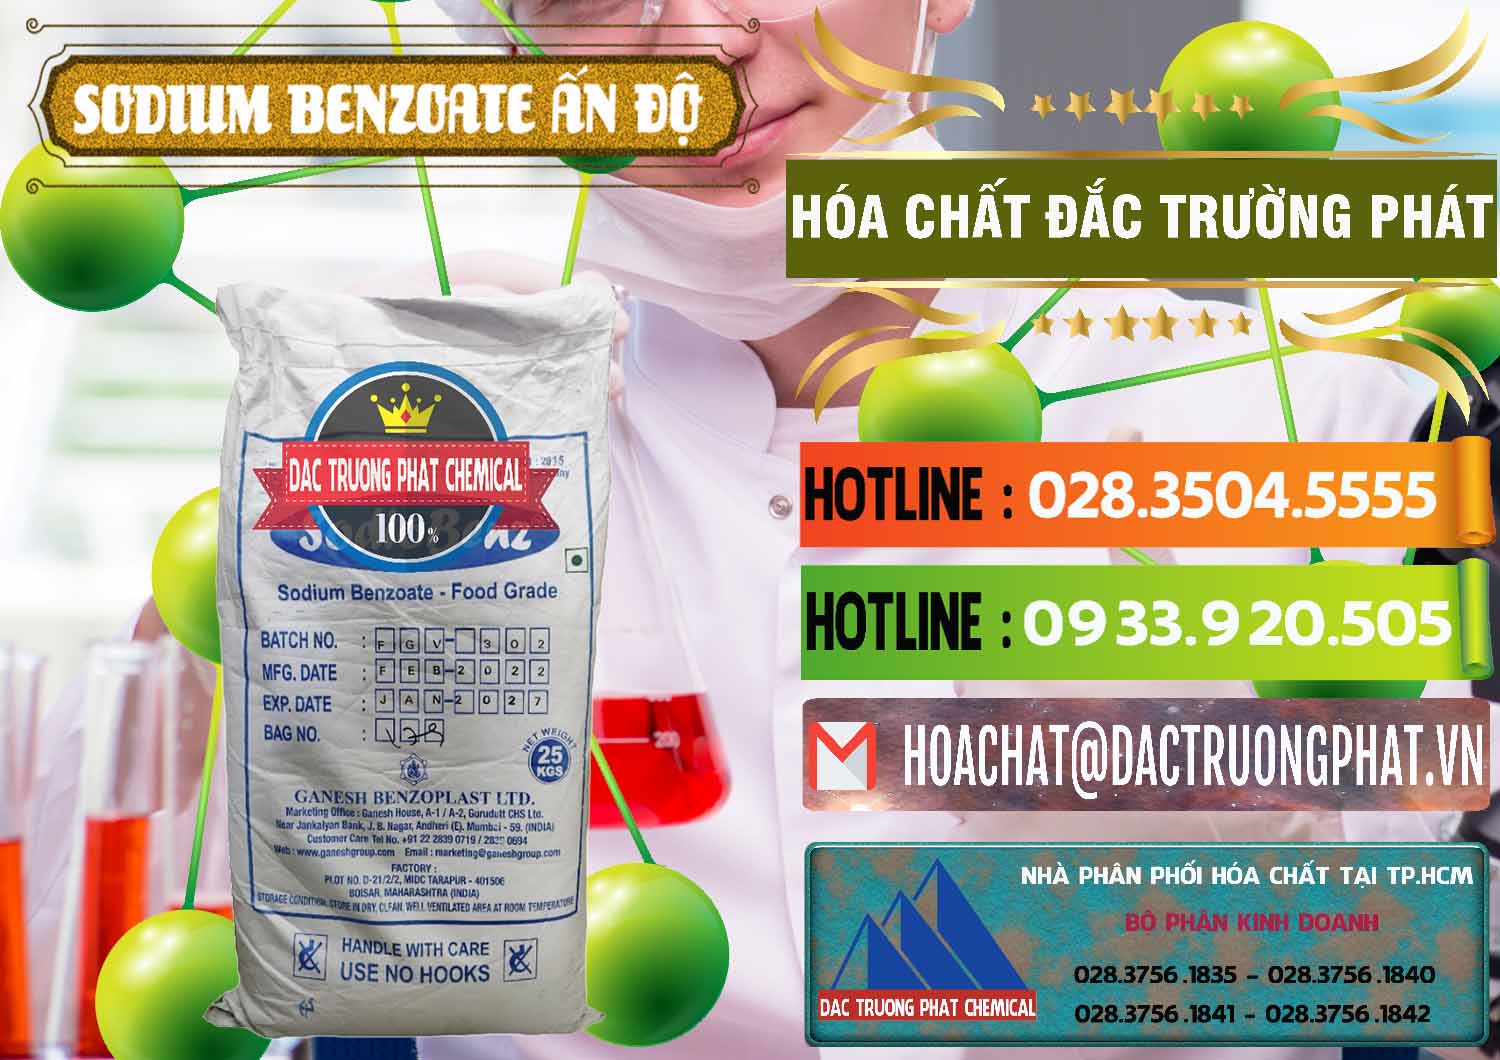 Kinh doanh và bán Sodium Benzoate - Mốc Bột Ấn Độ India - 0361 - Đơn vị chuyên kinh doanh và phân phối hóa chất tại TP.HCM - cungcaphoachat.com.vn